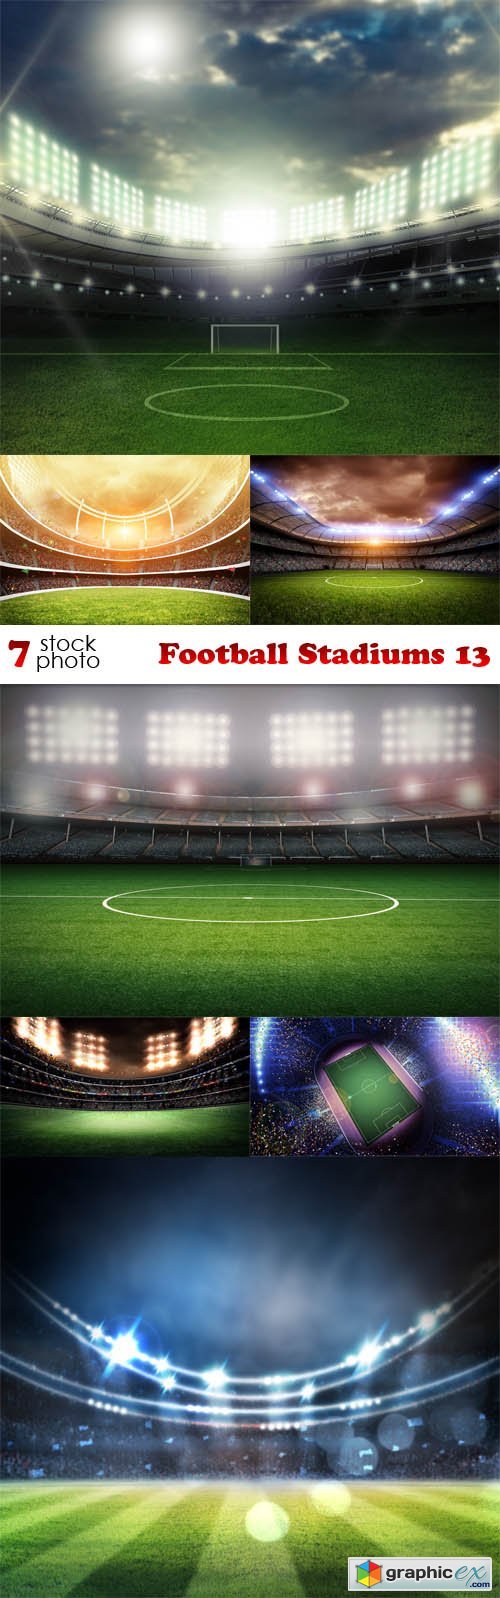 Football Stadiums 13